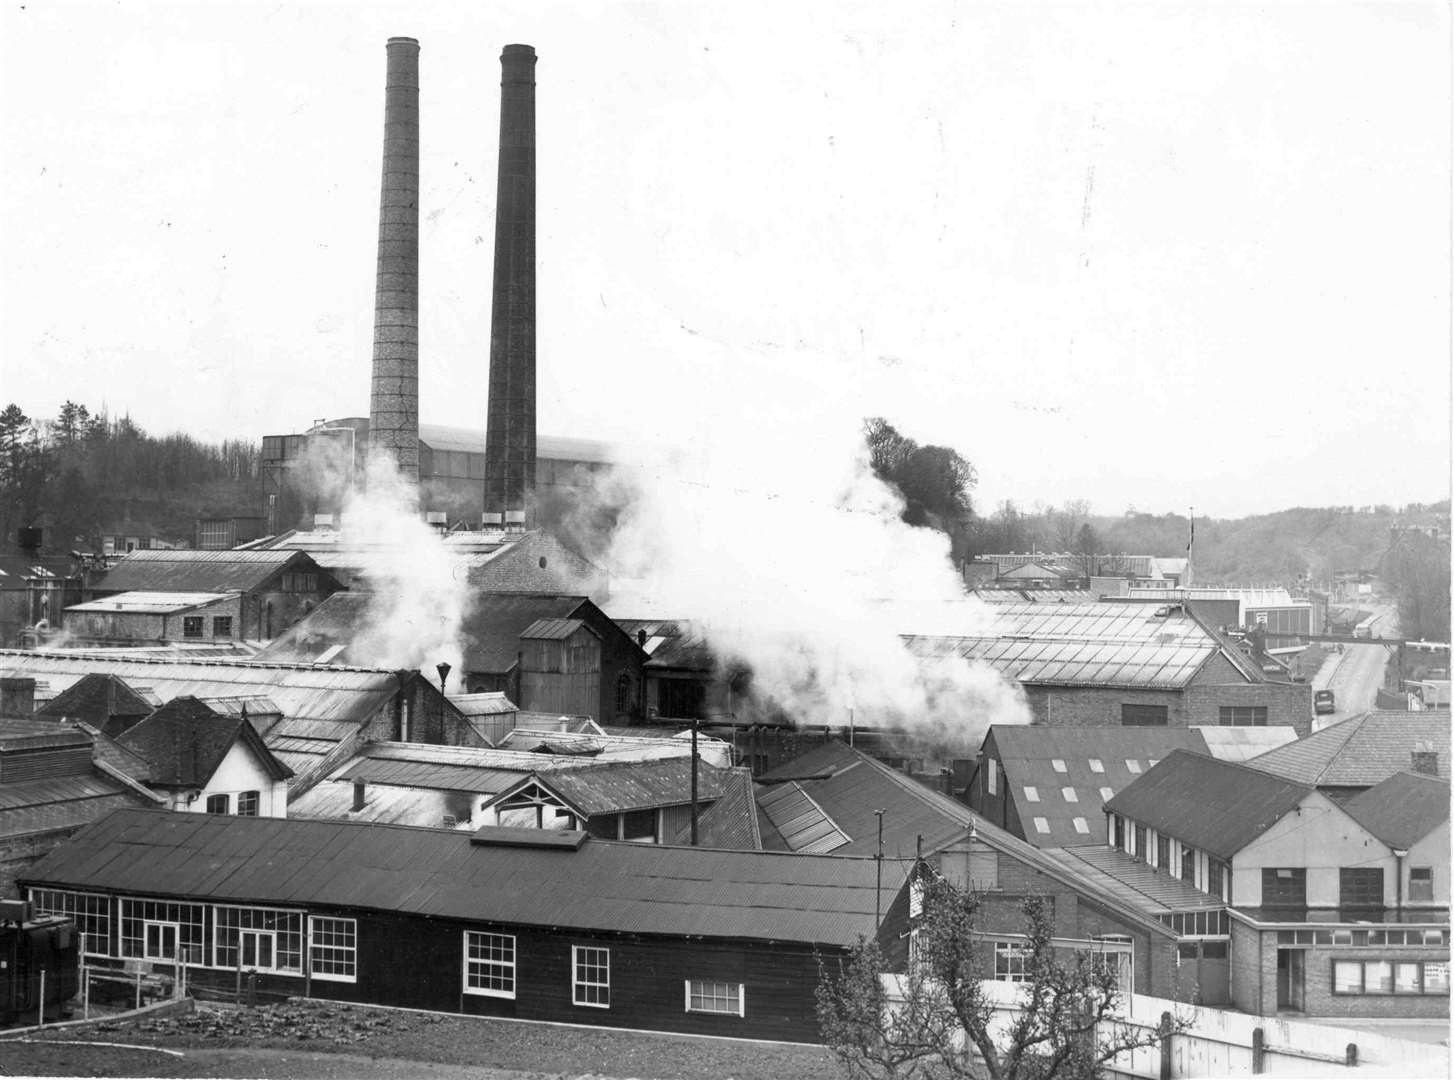 Reed's paper mill in Tovil, taken in 1963